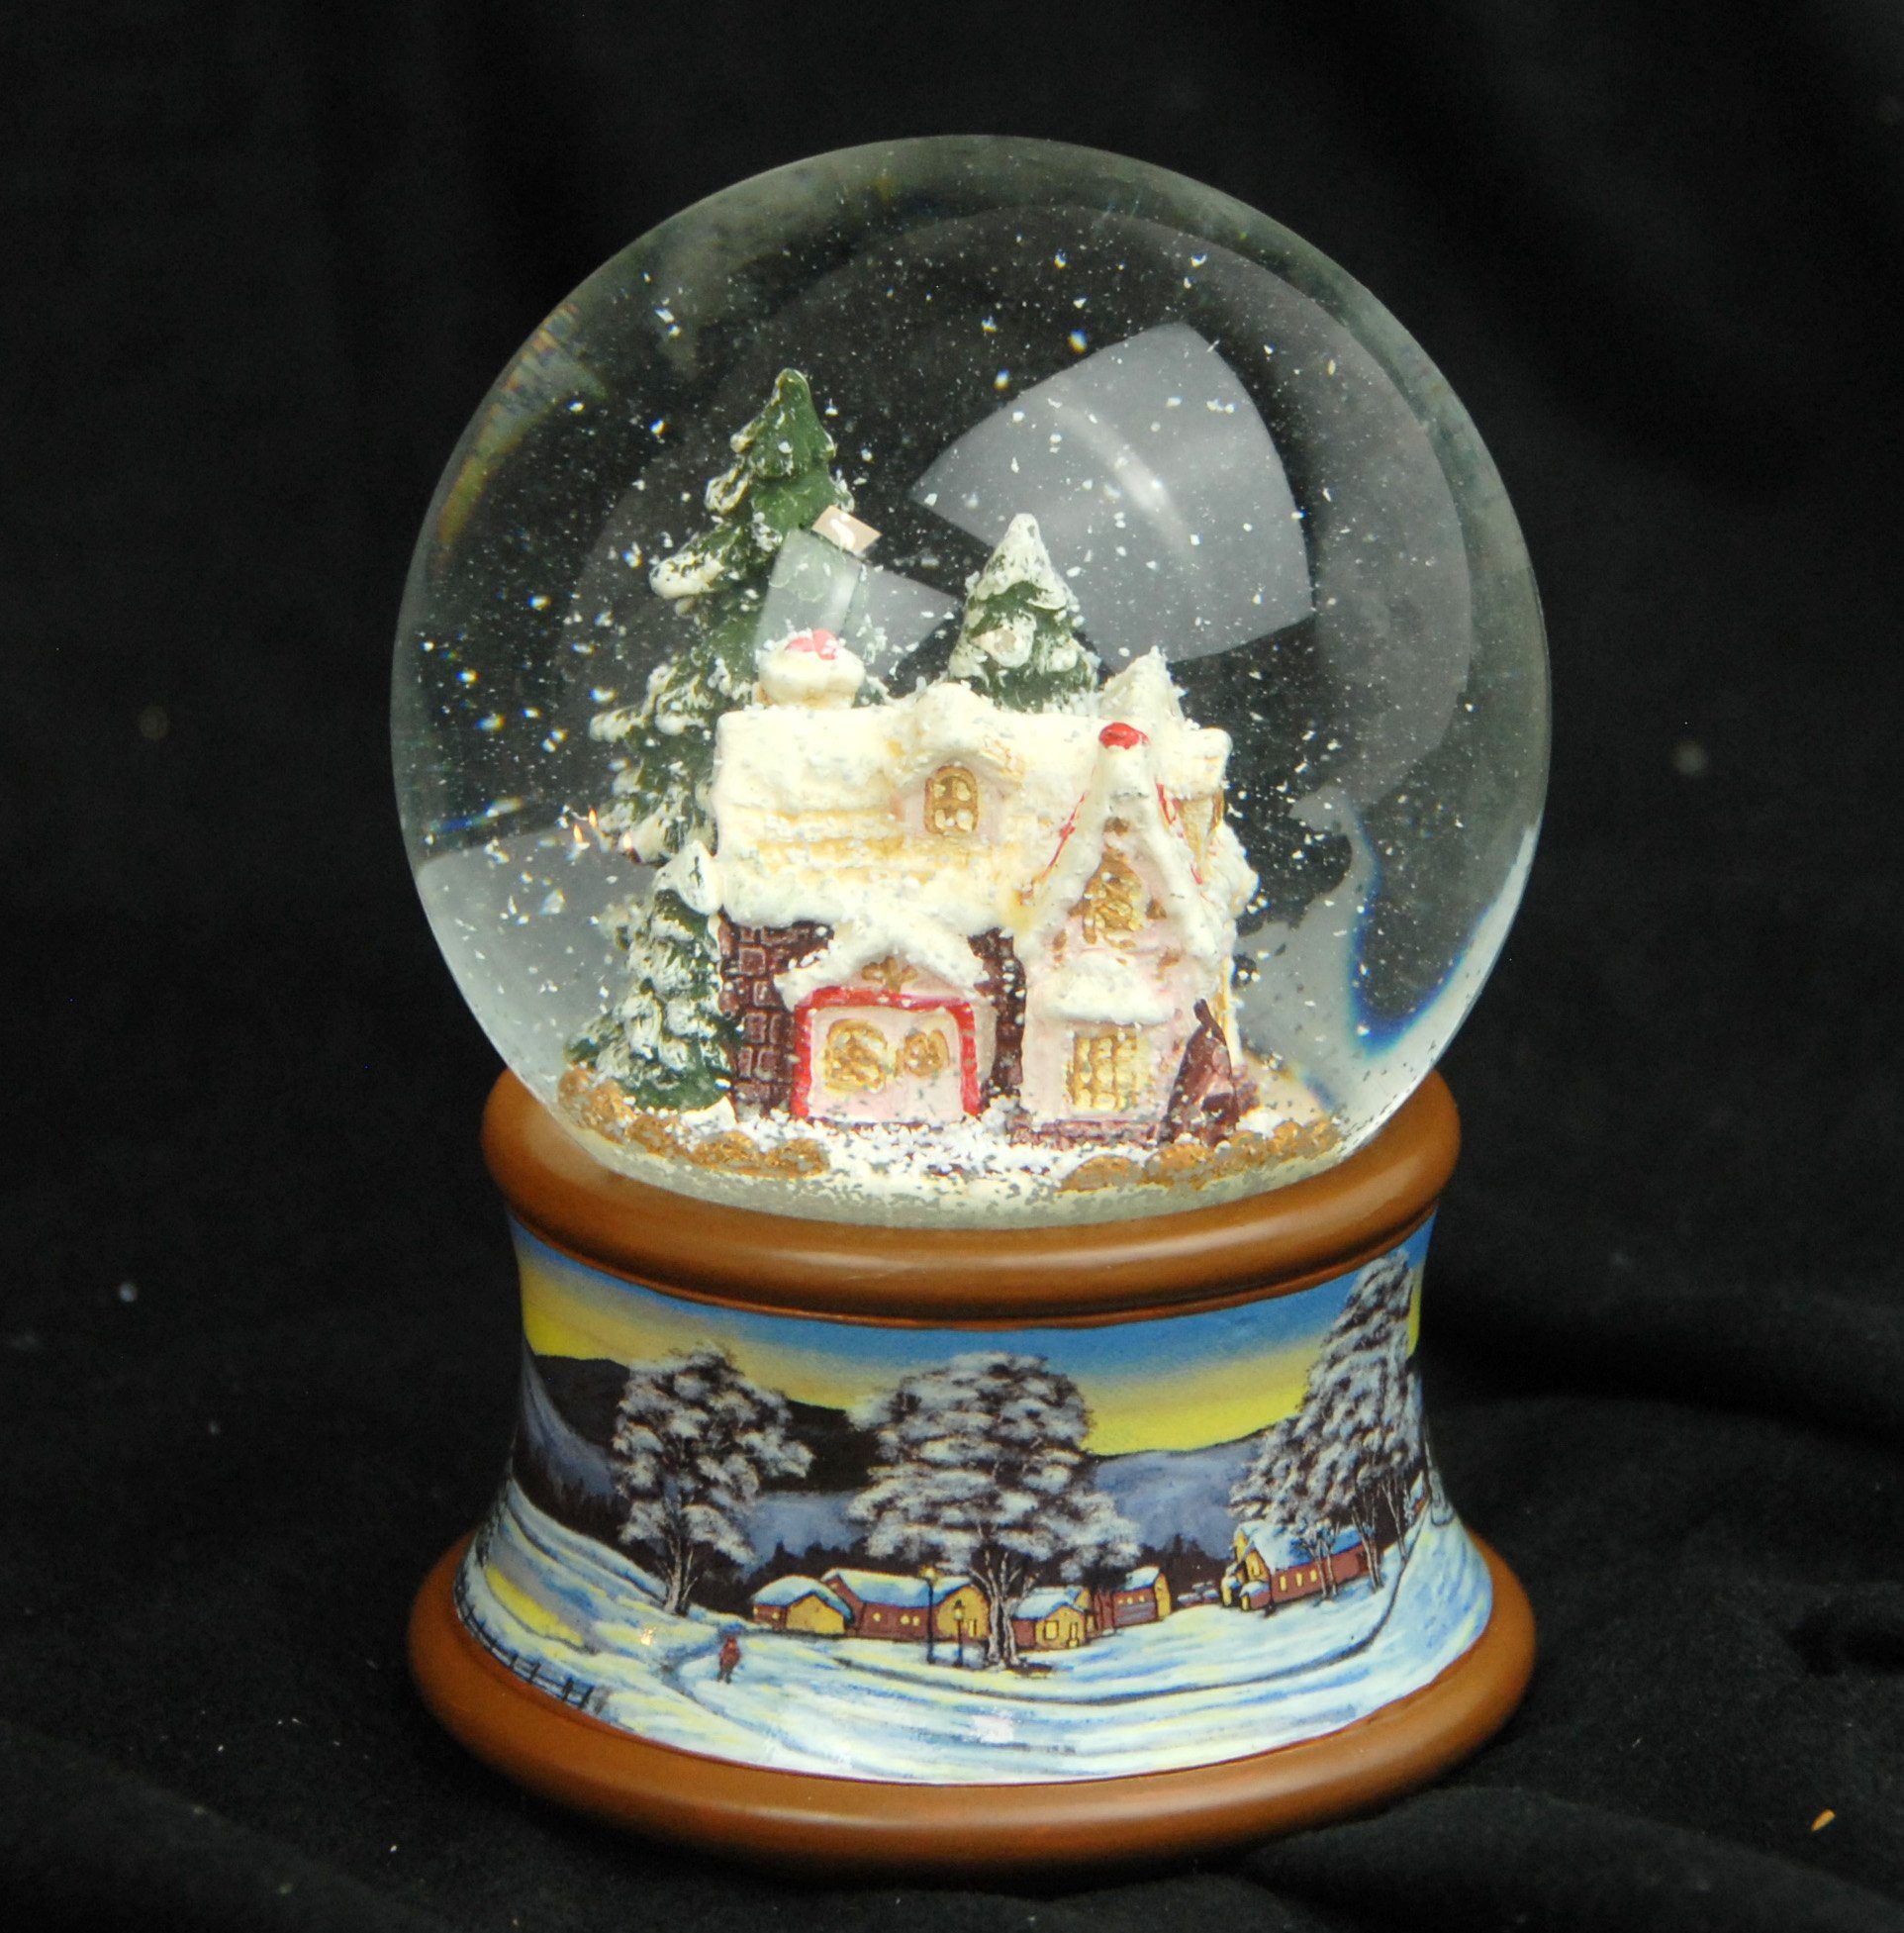 MINIUM-Collection Schneekugel Spieluhr 10 braun Winterlandschaft cm mit auf Zuckerbäckerhaus Sockel